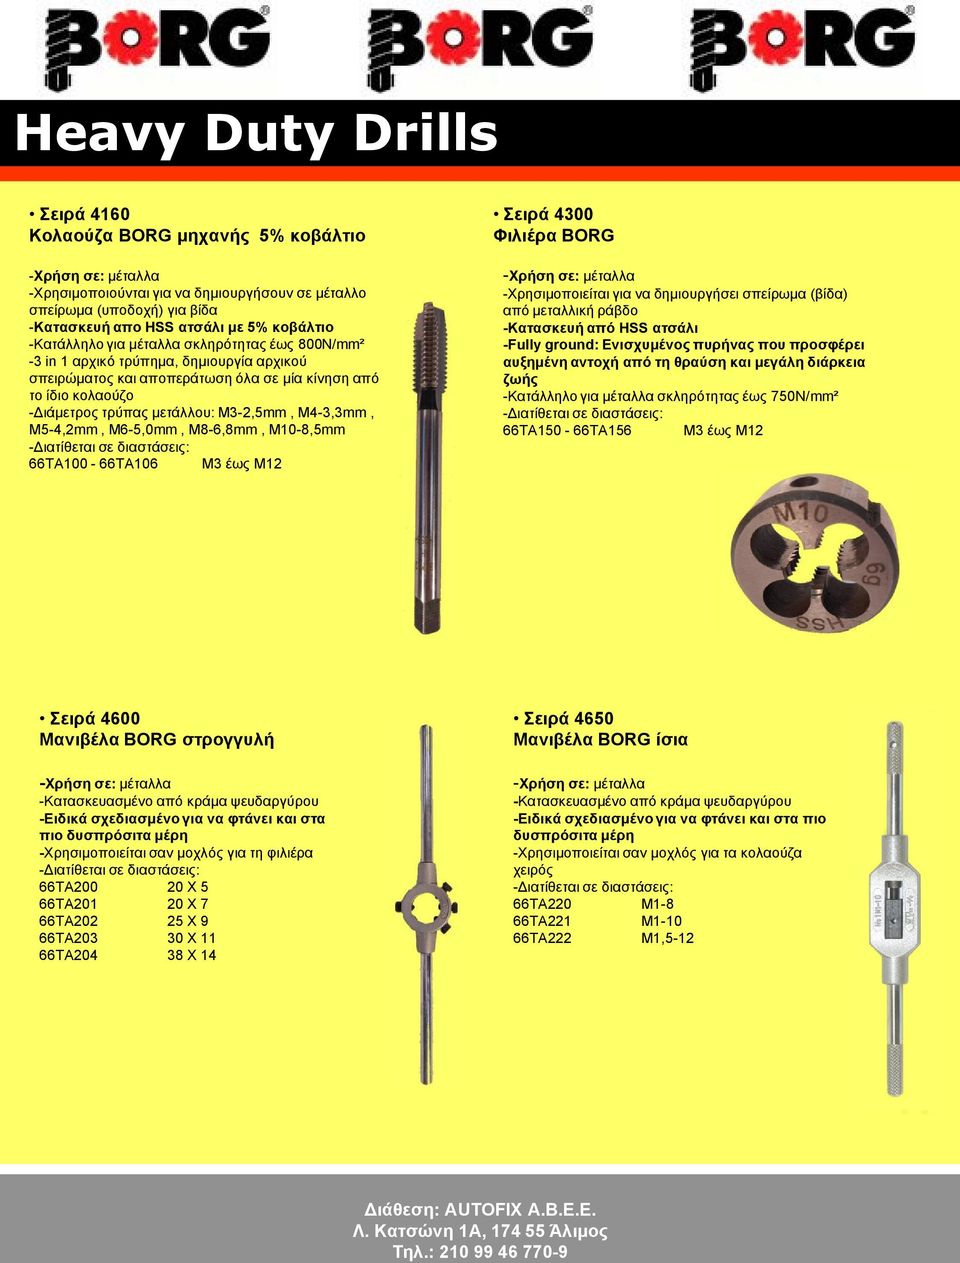 M5-4,2mm, M6-5,0mm, M8-6,8mm, M10-8,5mm 66ΤΑ100-66ΤΑ106 Μ3 έως Μ12 Σειρά 4300 Φιλιέρα BORG -Χρήση σε: μέταλλα -Χρησιμοποιείται για να δημιουργήσει σπείρωμα (βίδα) από μεταλλική ράβδο -Κατασκευή από